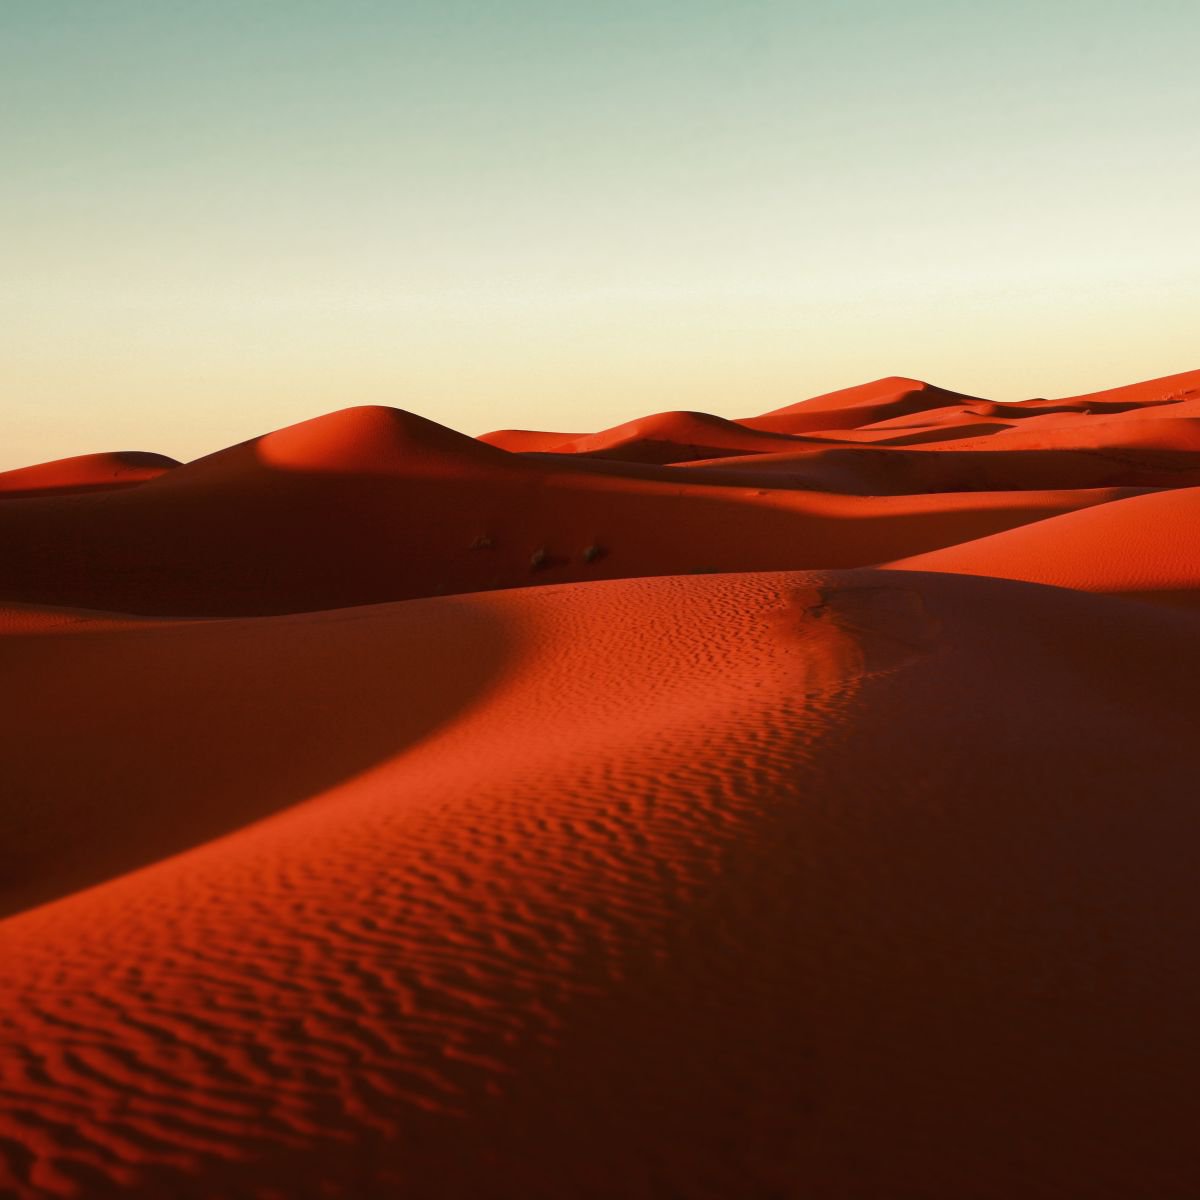 Desert Love by Nadia Attura